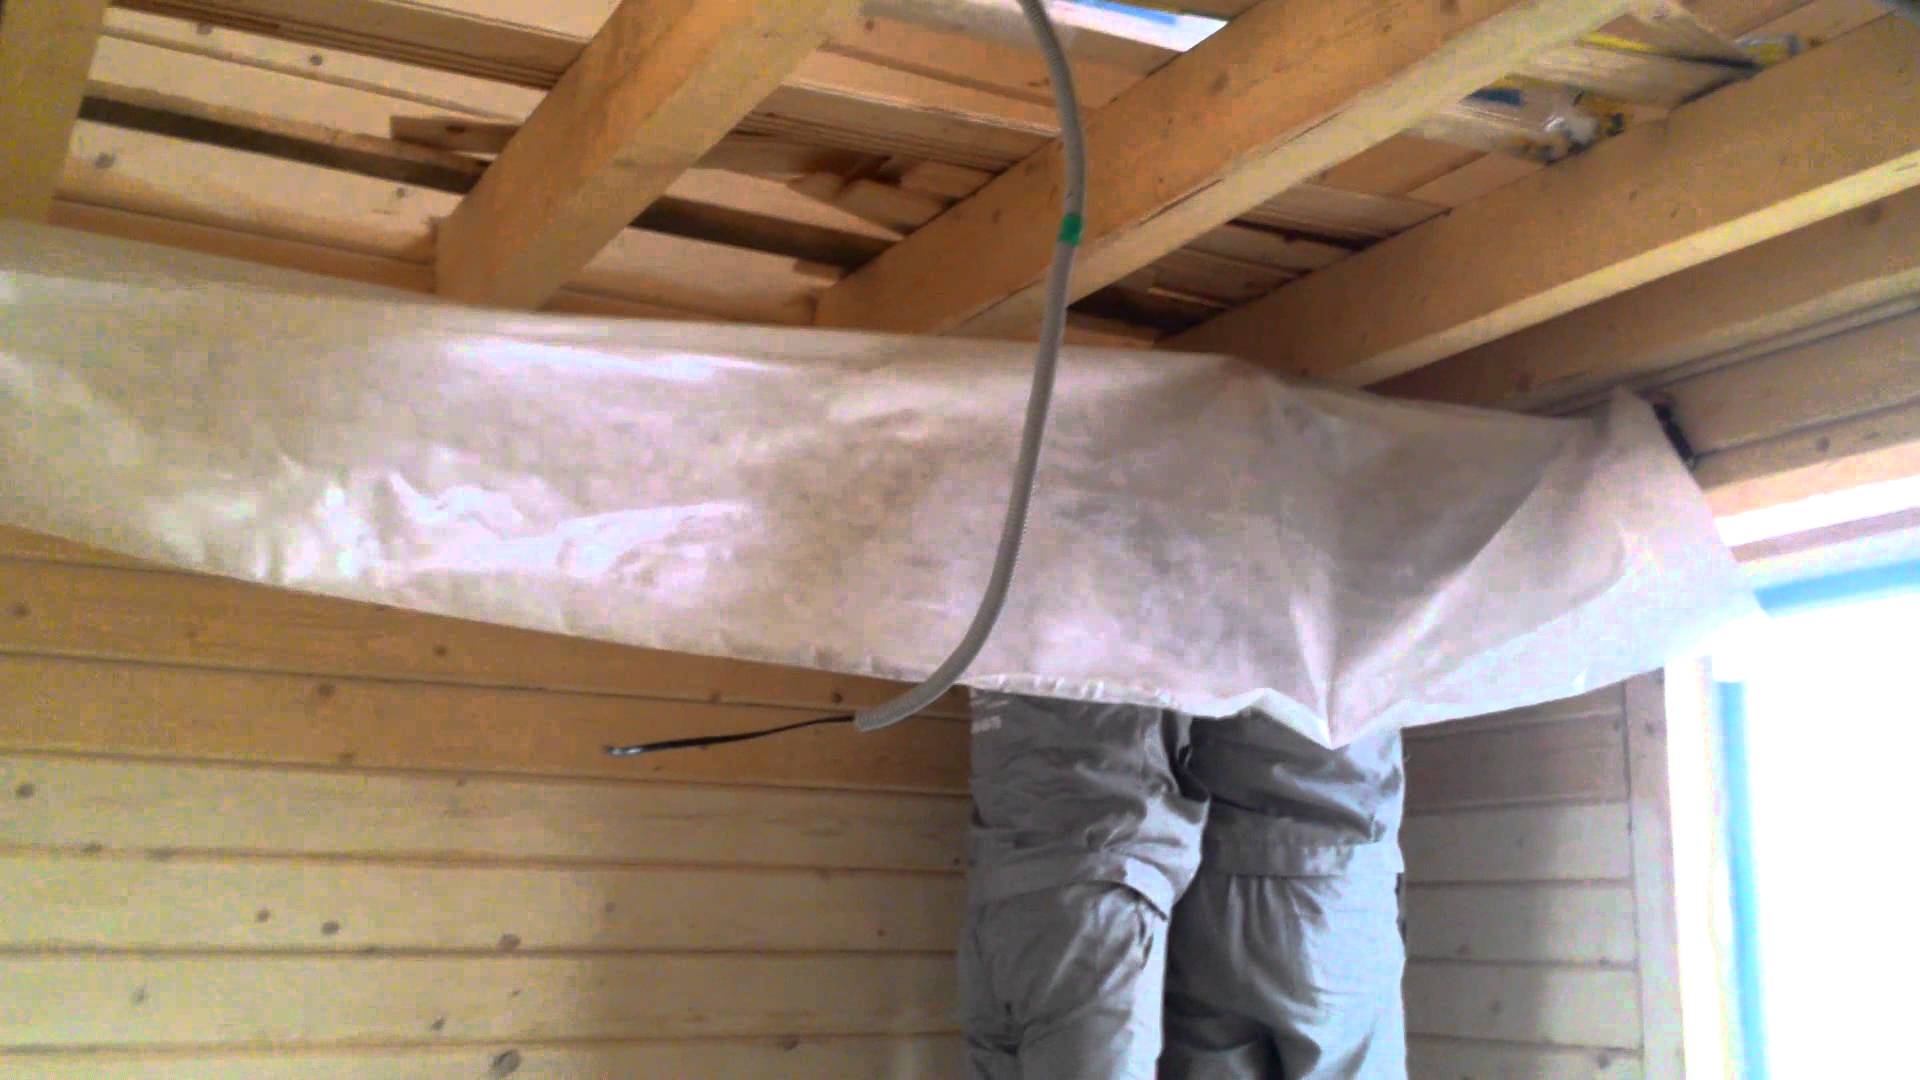 Тонкости пароизоляции для потолка в деревянном перекрытии